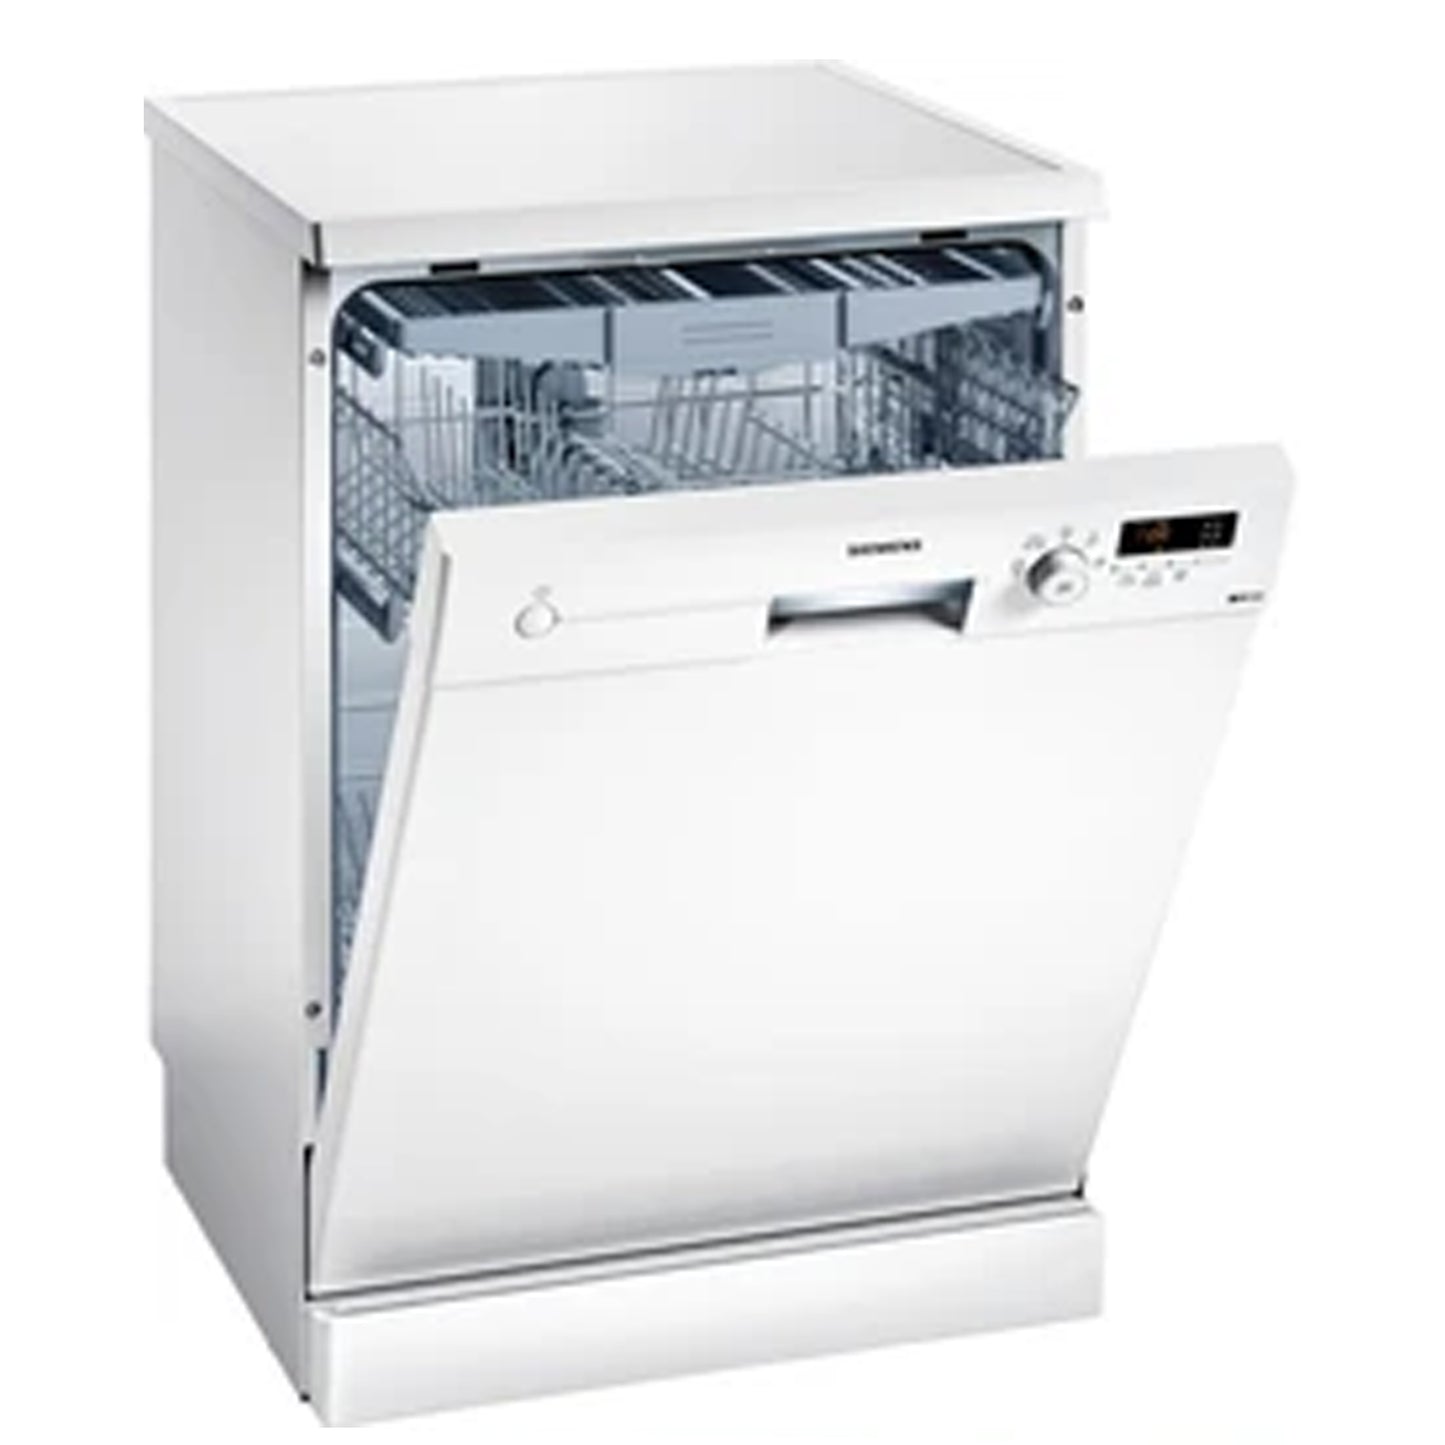 Siemens Dishwasher 60cm - White